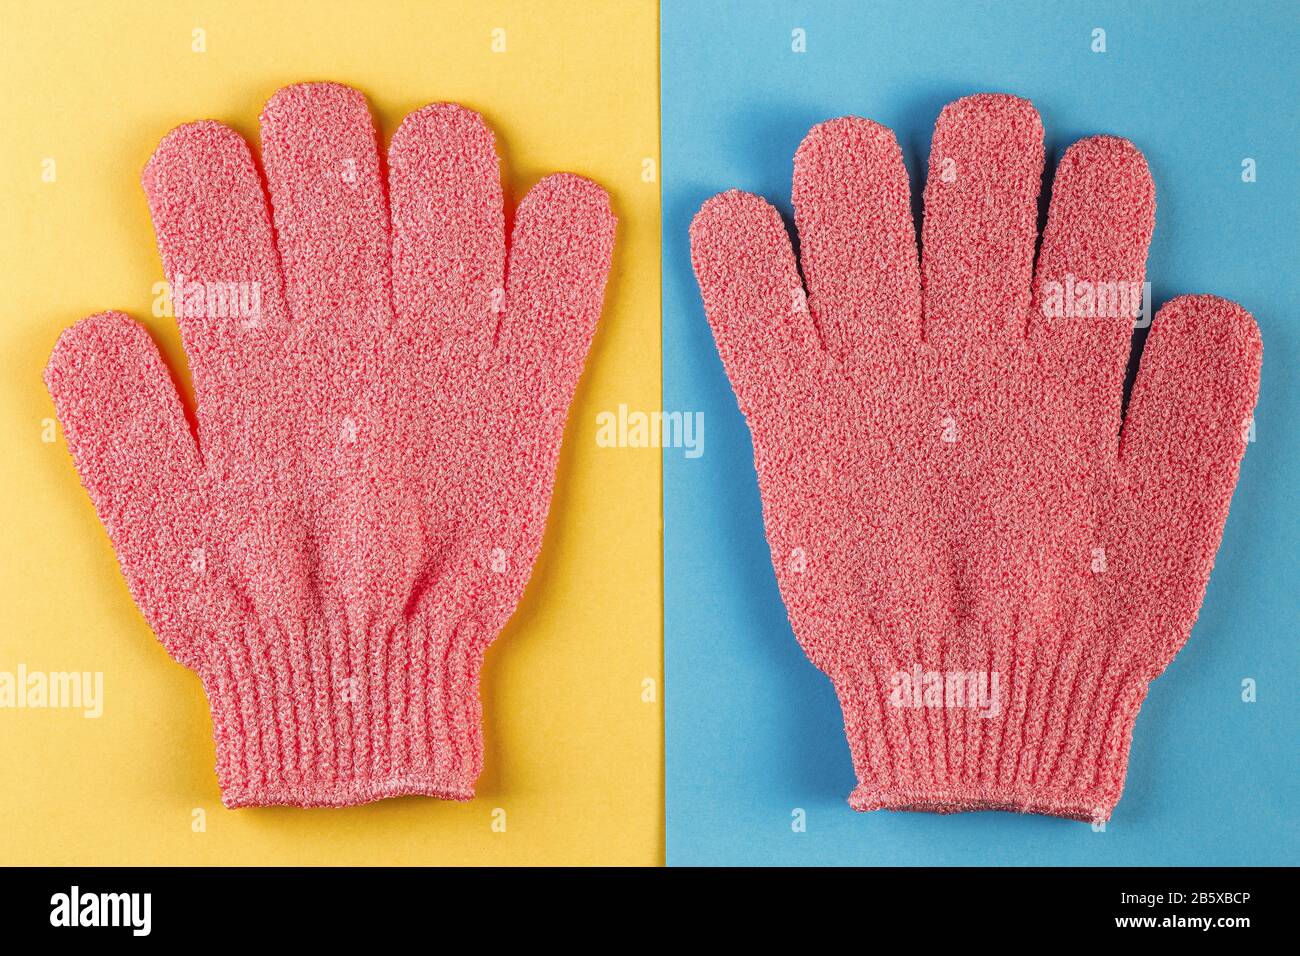 Un par de guantes de masaje de color rosa para ducharse sobre fondo azul y  amarillo. Guantes para usar en la ducha para masajes y exfoliación. Fondo  de belleza con cos Fotografía